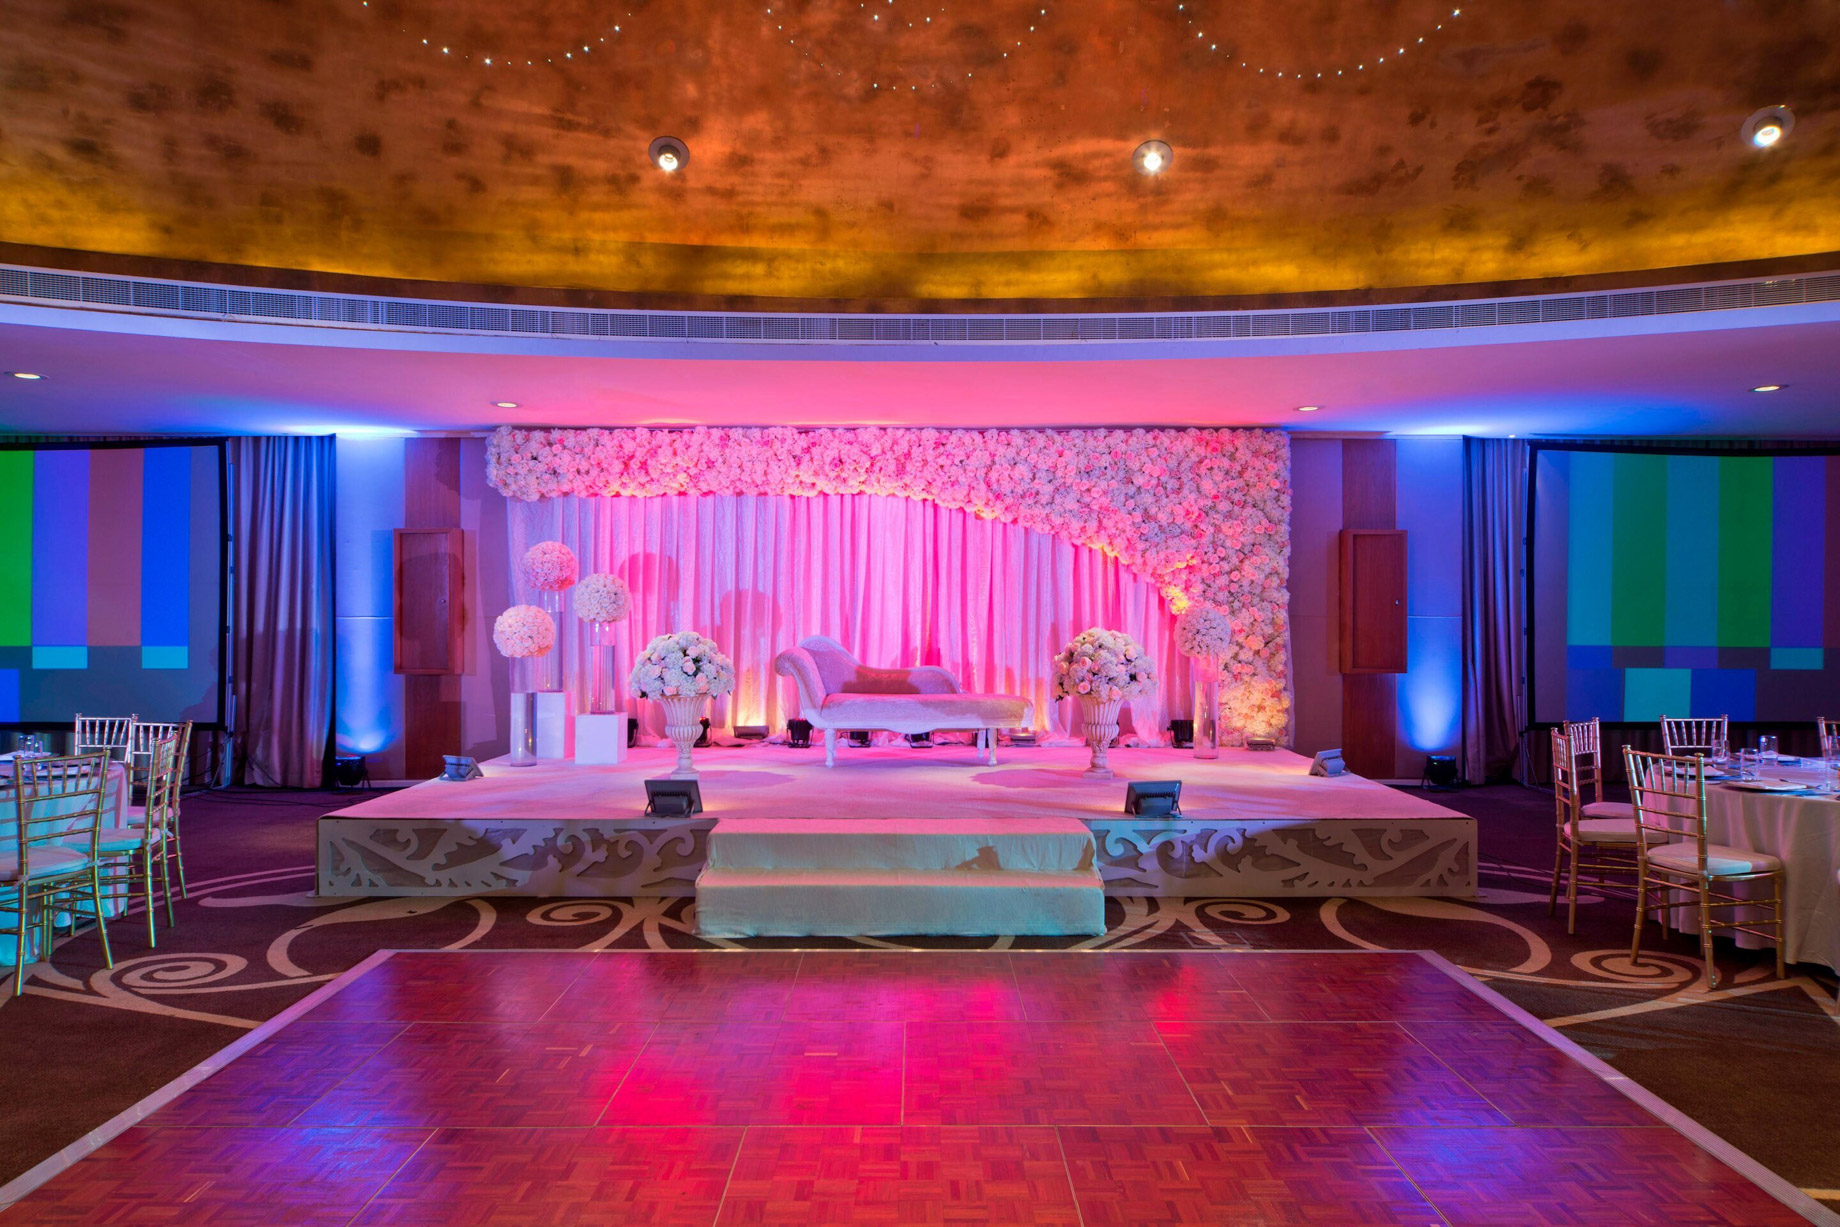 W Doha Hotel – Doha, Qatar – Wedding Banquet Room Setup